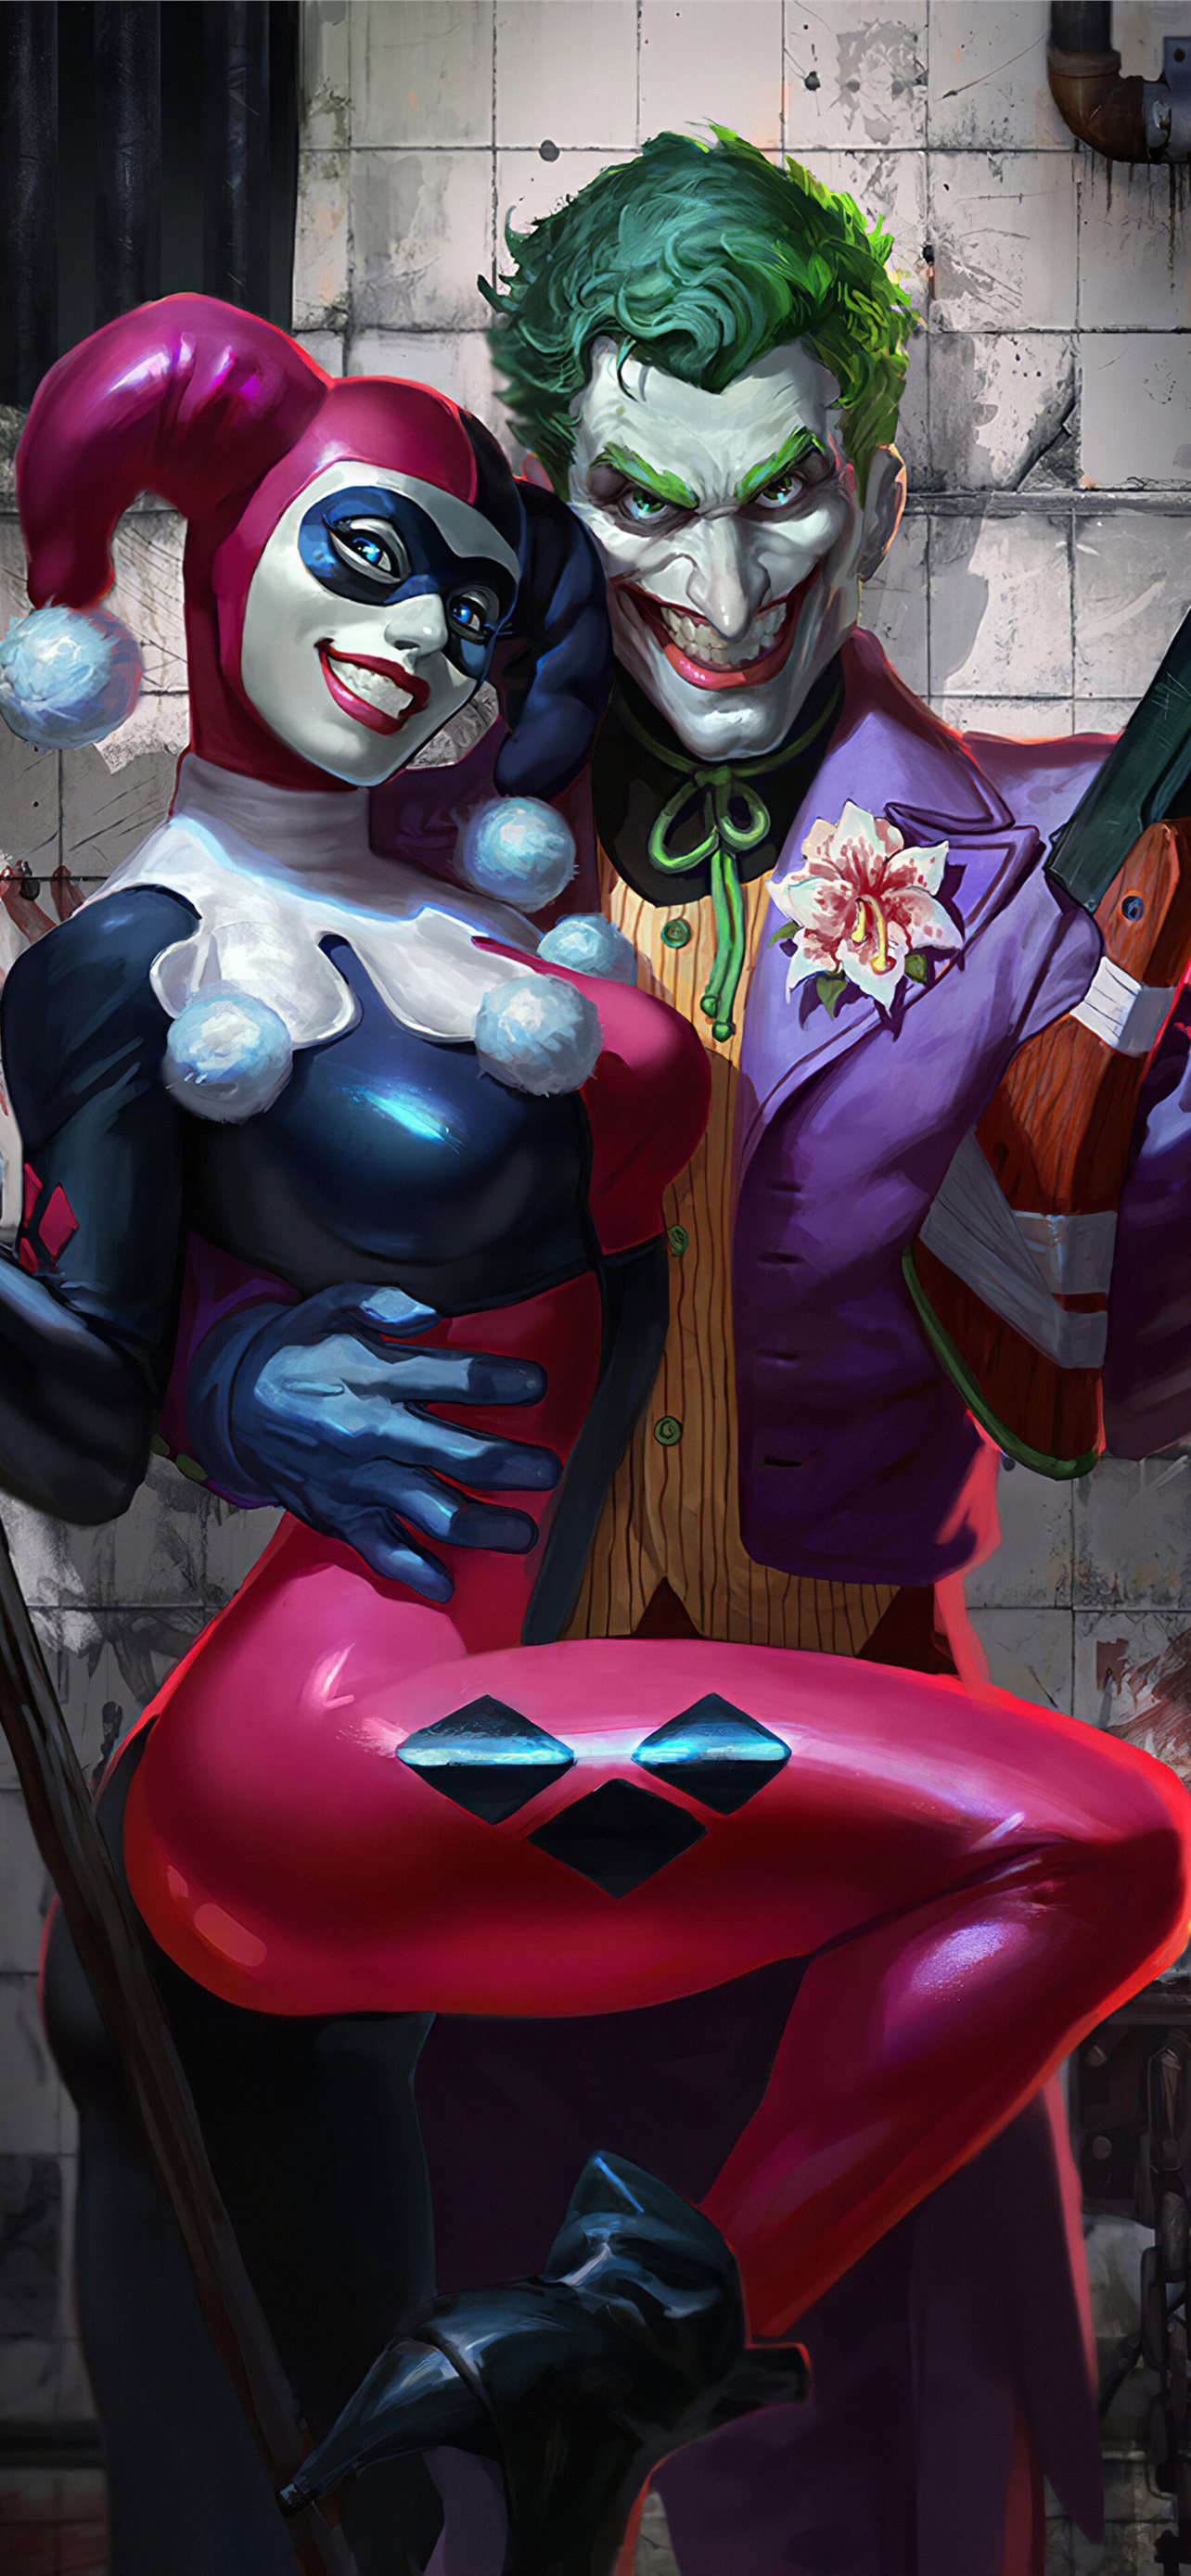 Joker Harley Quinn DC 4K phone HD Image Ba. iPhone Wallpaper Free Download